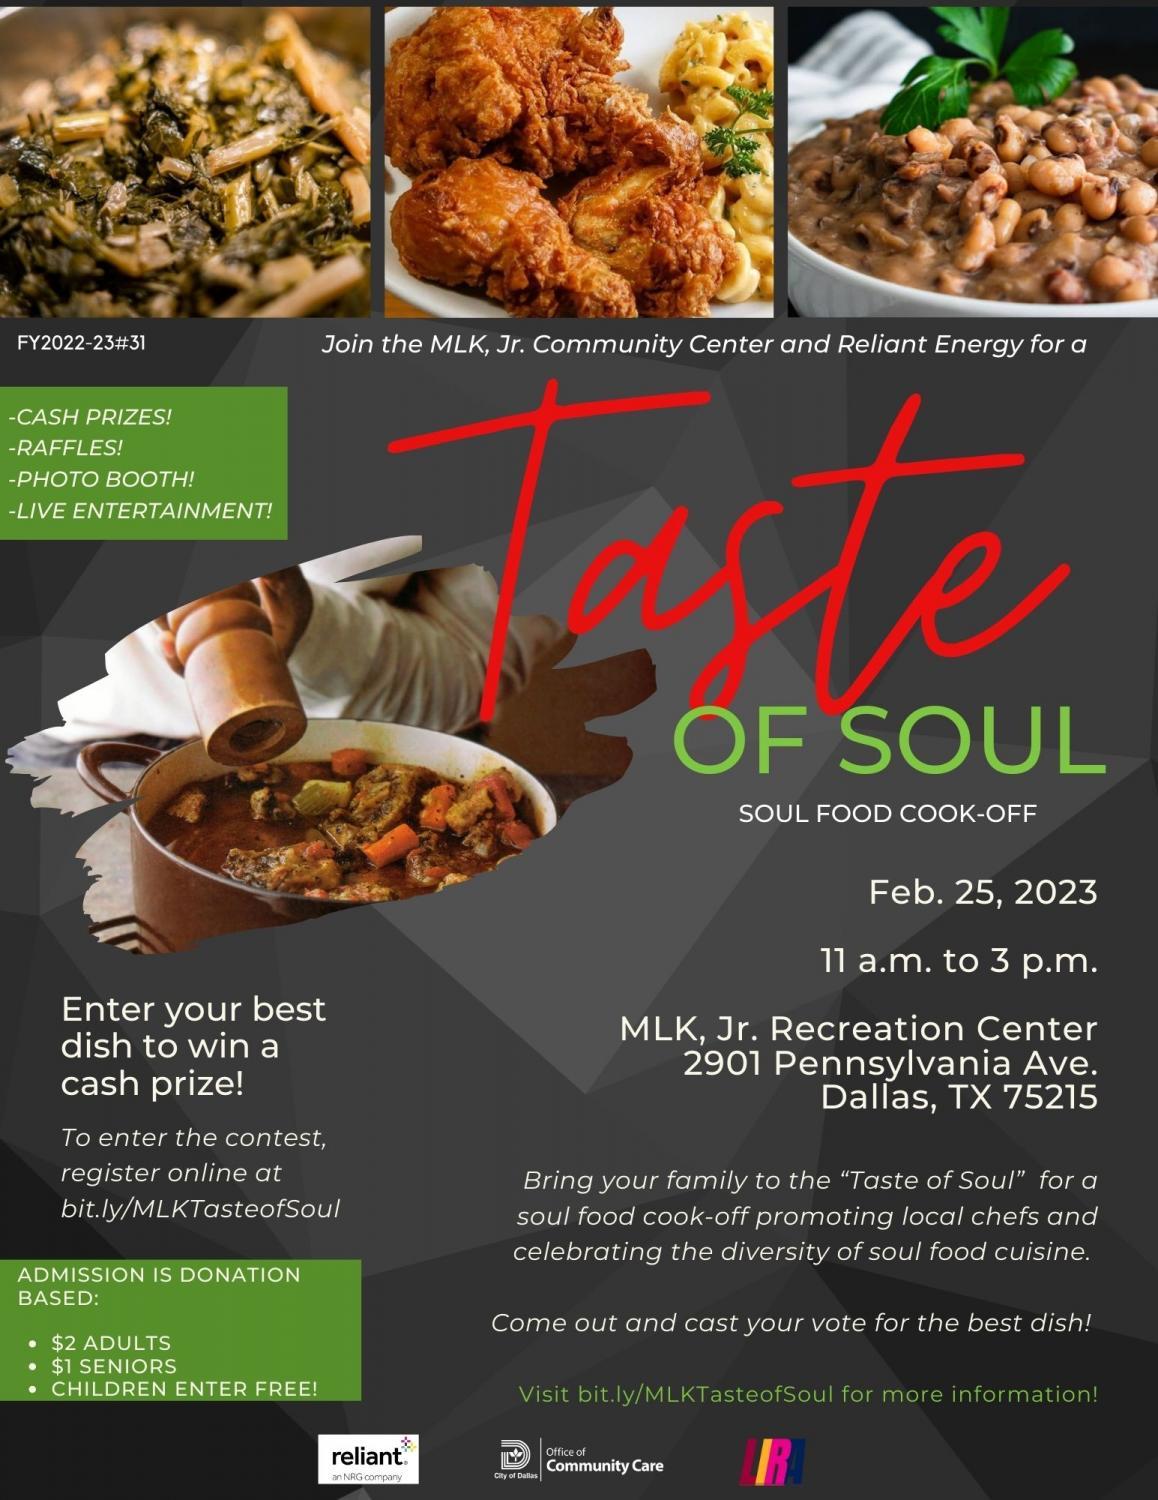 2023 'Taste of Soul' Soul Food Cook-Off